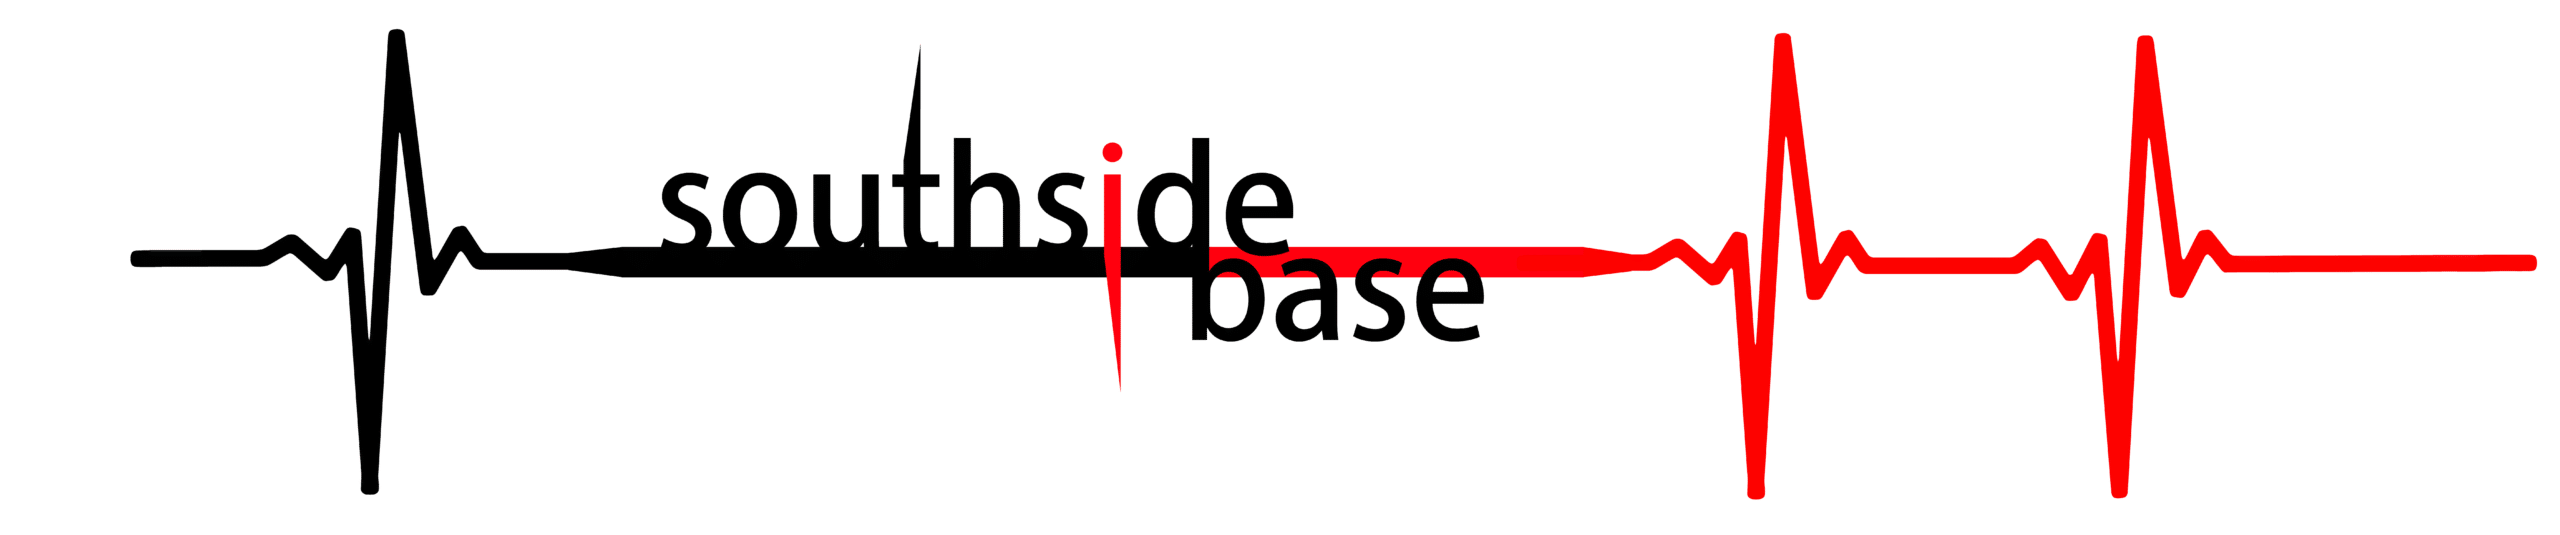 southsidebase-logo